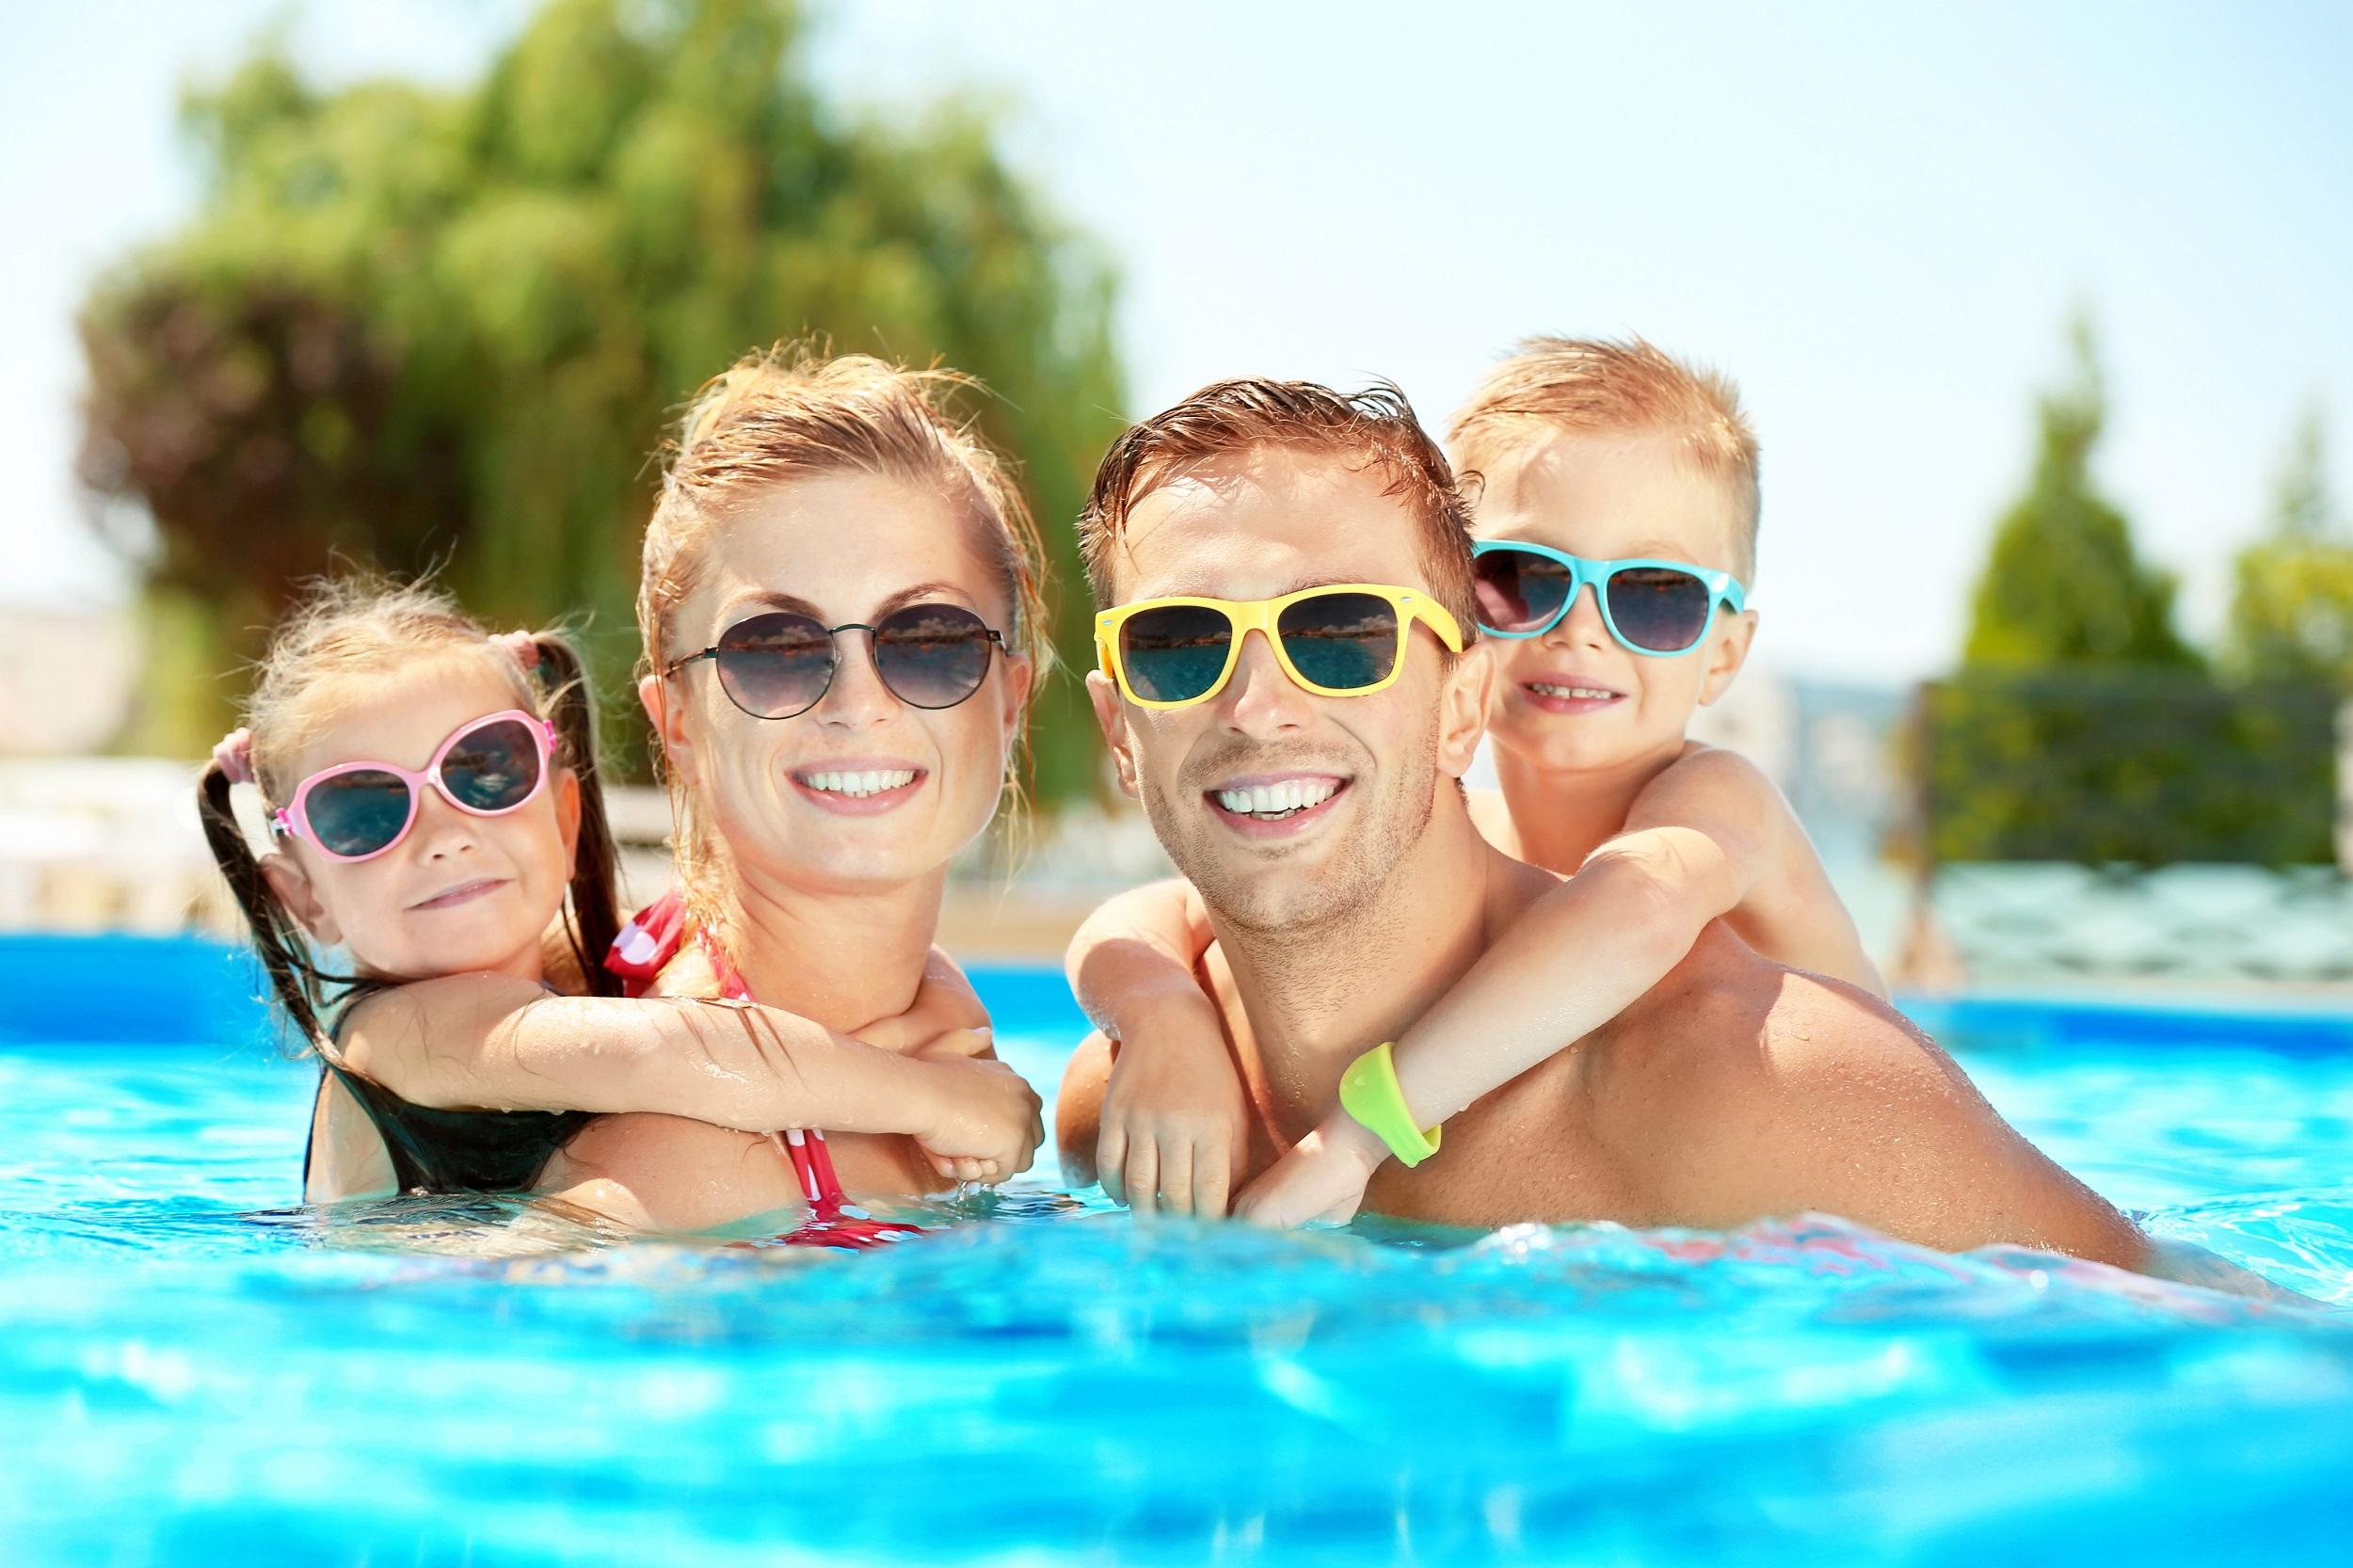 parc aquatique famille heureuse avec des lunettes de soleil